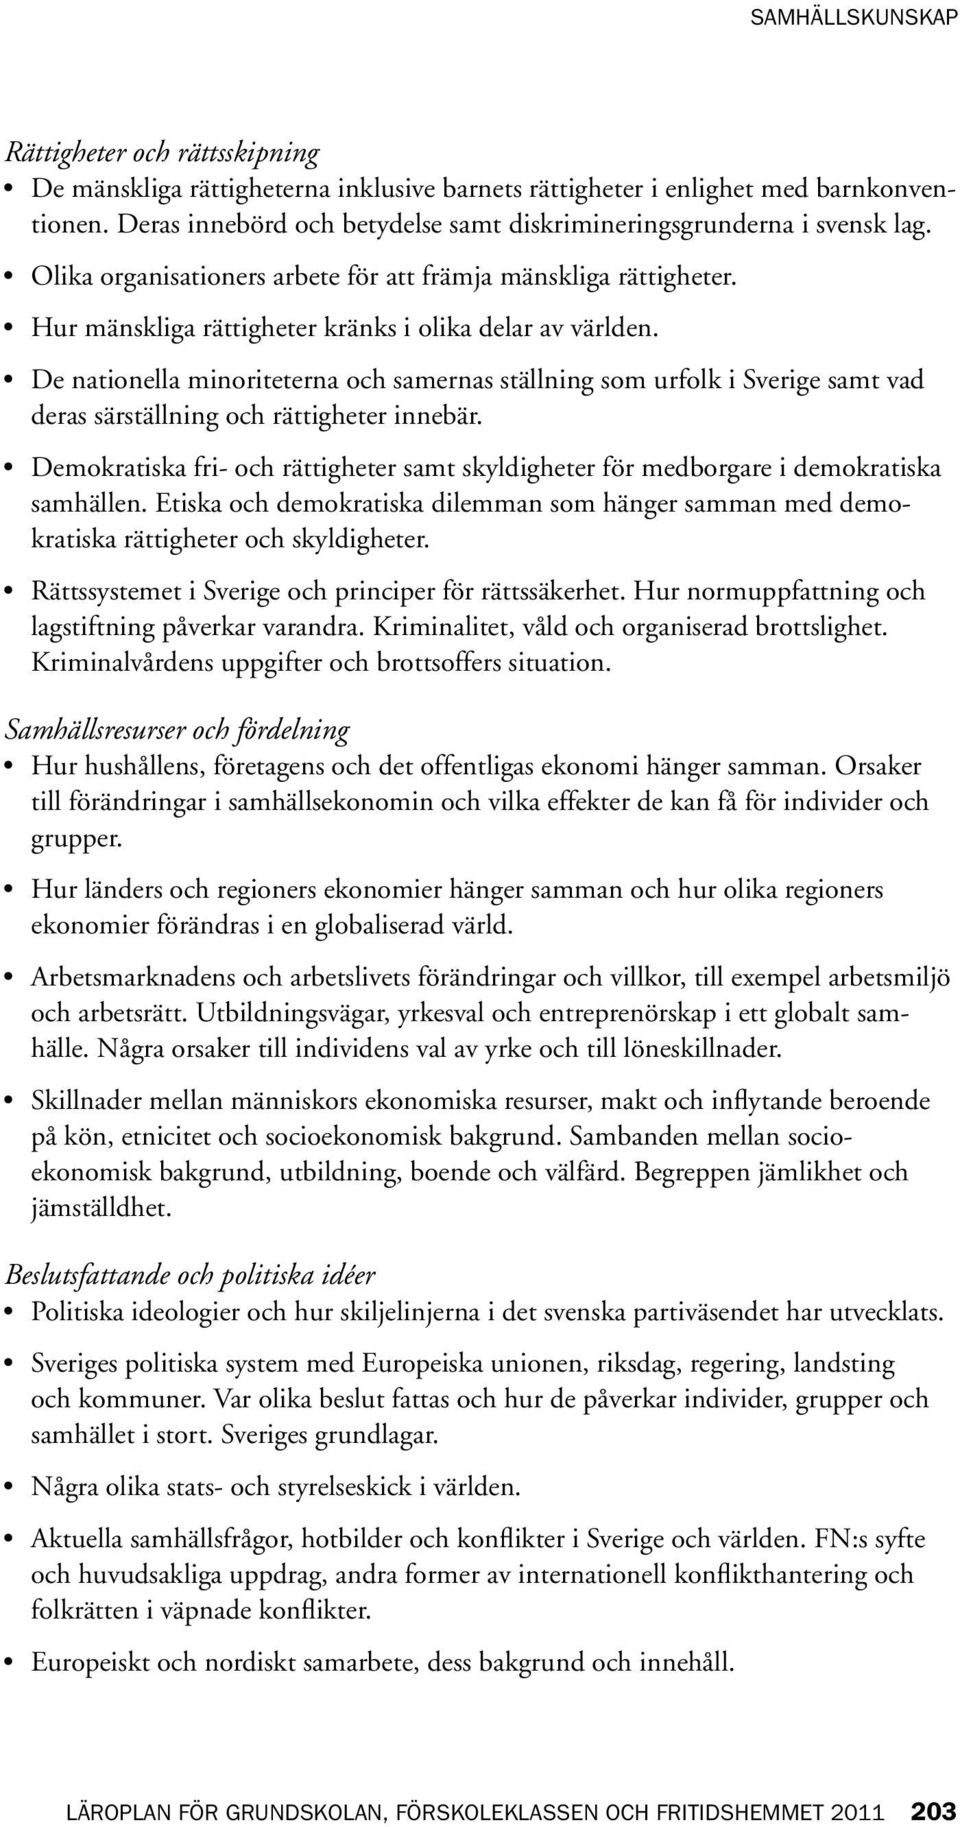 De nationella minoriteterna och samernas ställning som urfolk i Sverige samt vad deras särställning och rättigheter innebär.